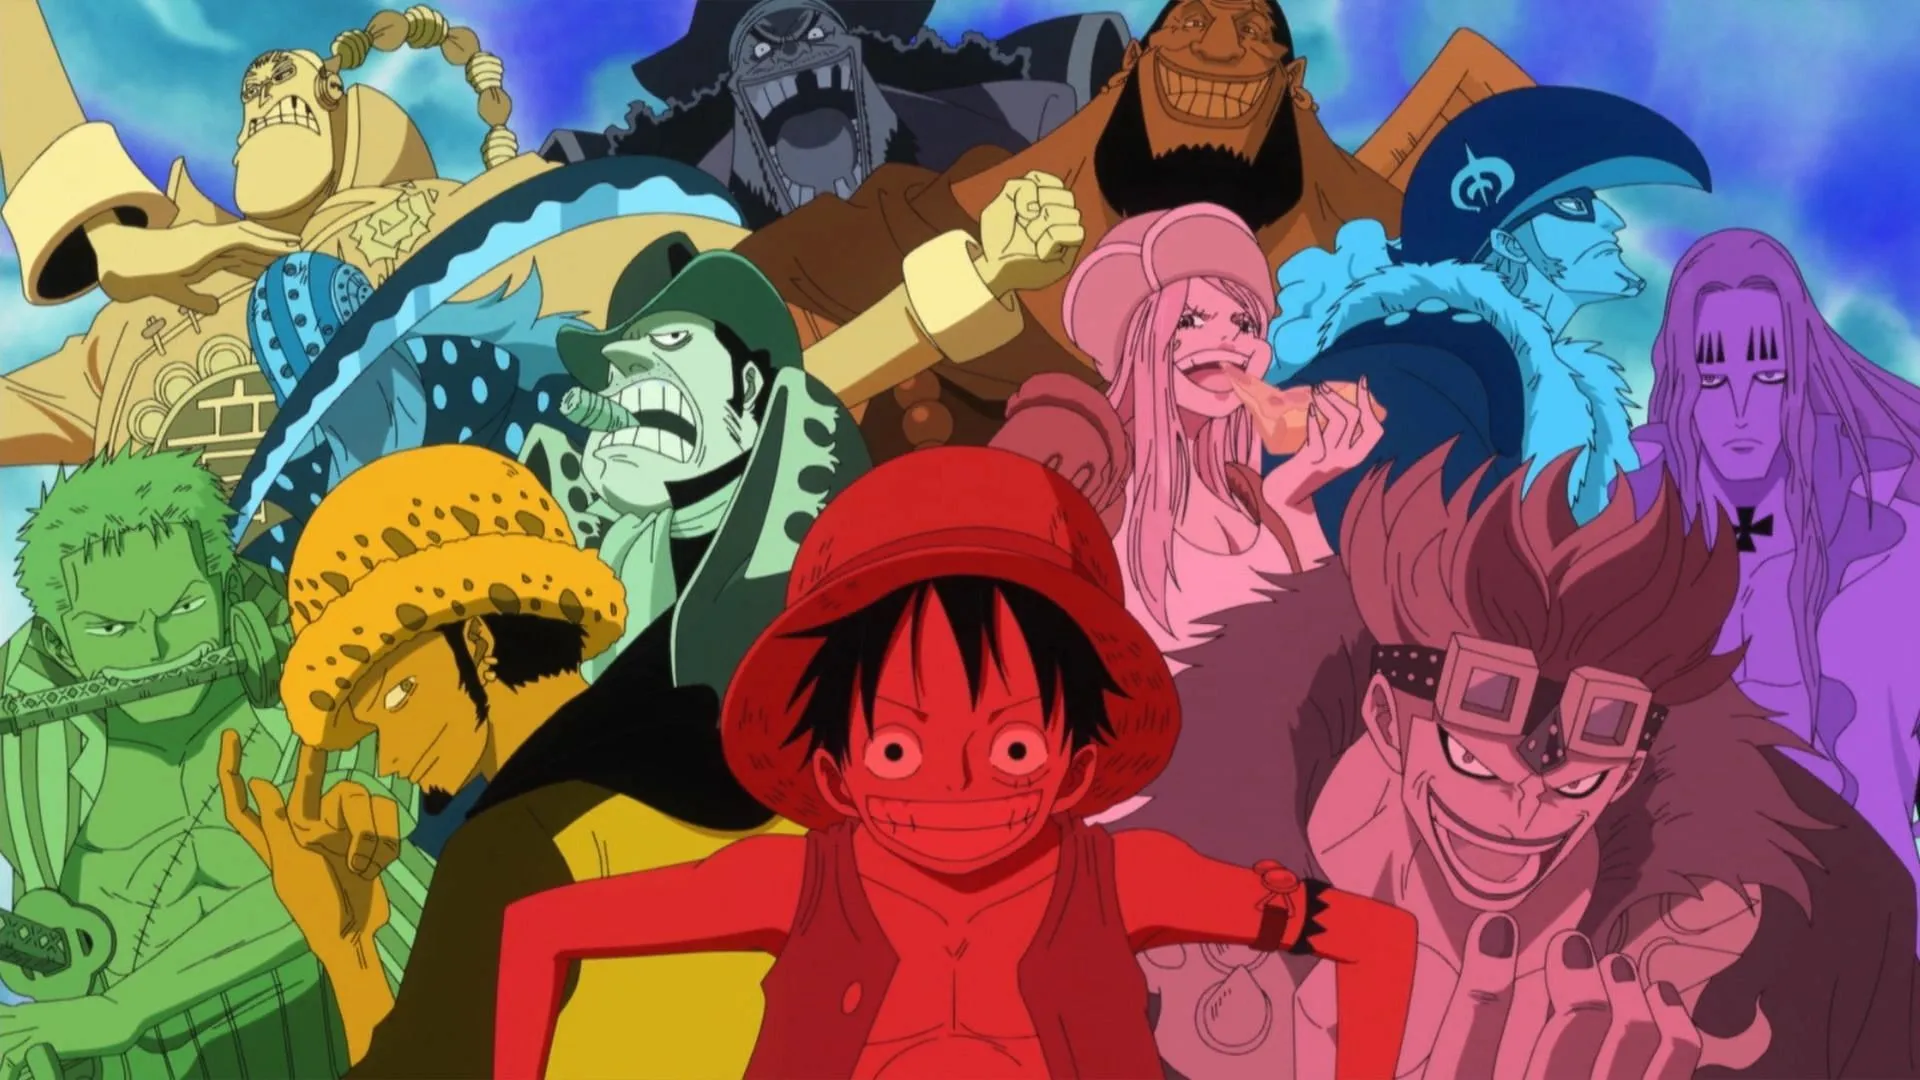 Bonney fait partie de la pire génération de One Piece, qui comprend Barbe Noire et les onze supernovas (Image via Toei Animation, One Piece)